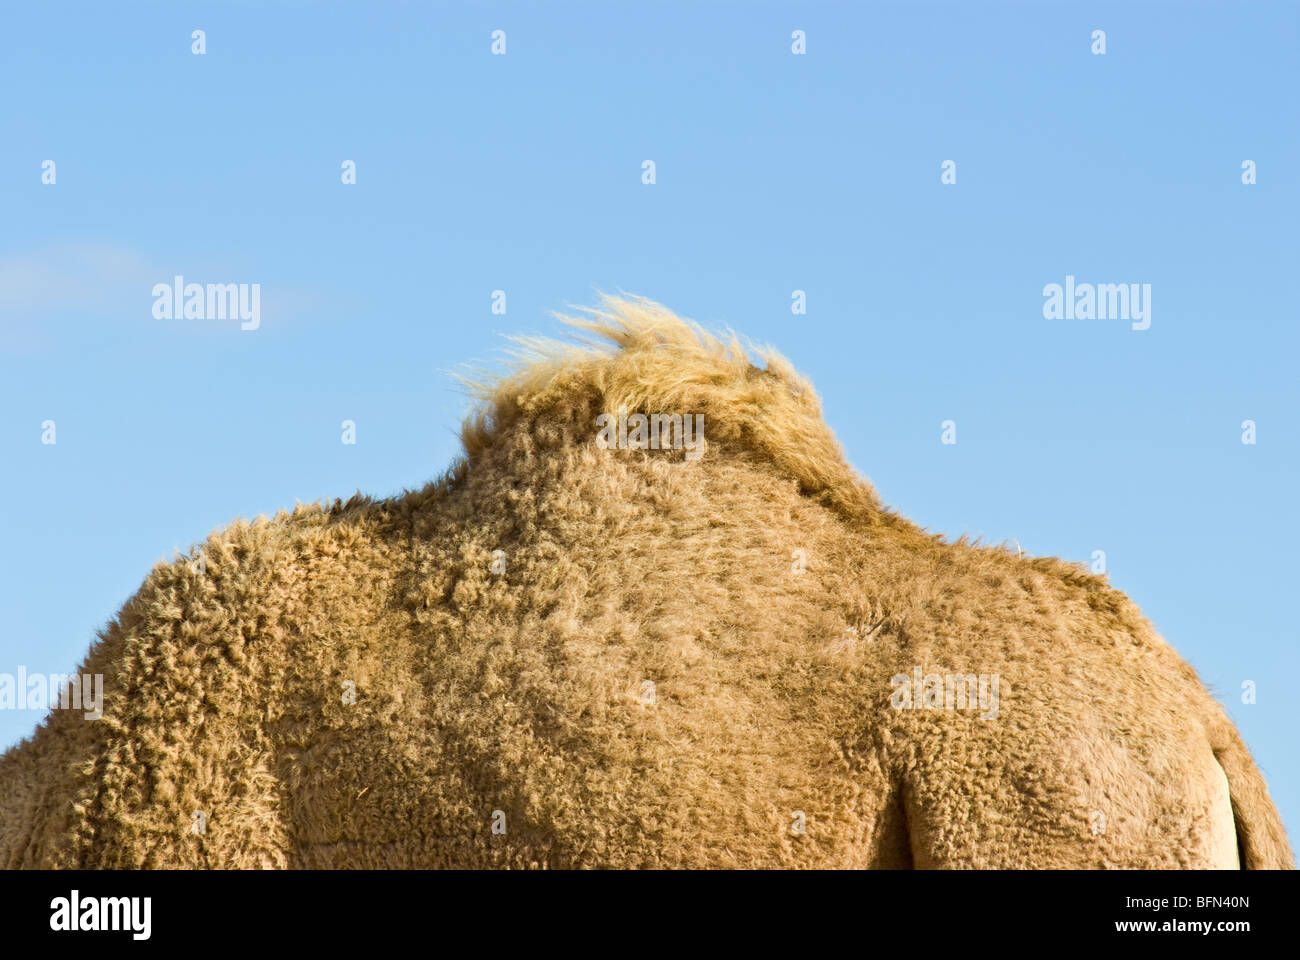 Die Buckel ein Dromedar Kamel speichert Fettreserven für beschwerliche Reisen Stockfoto